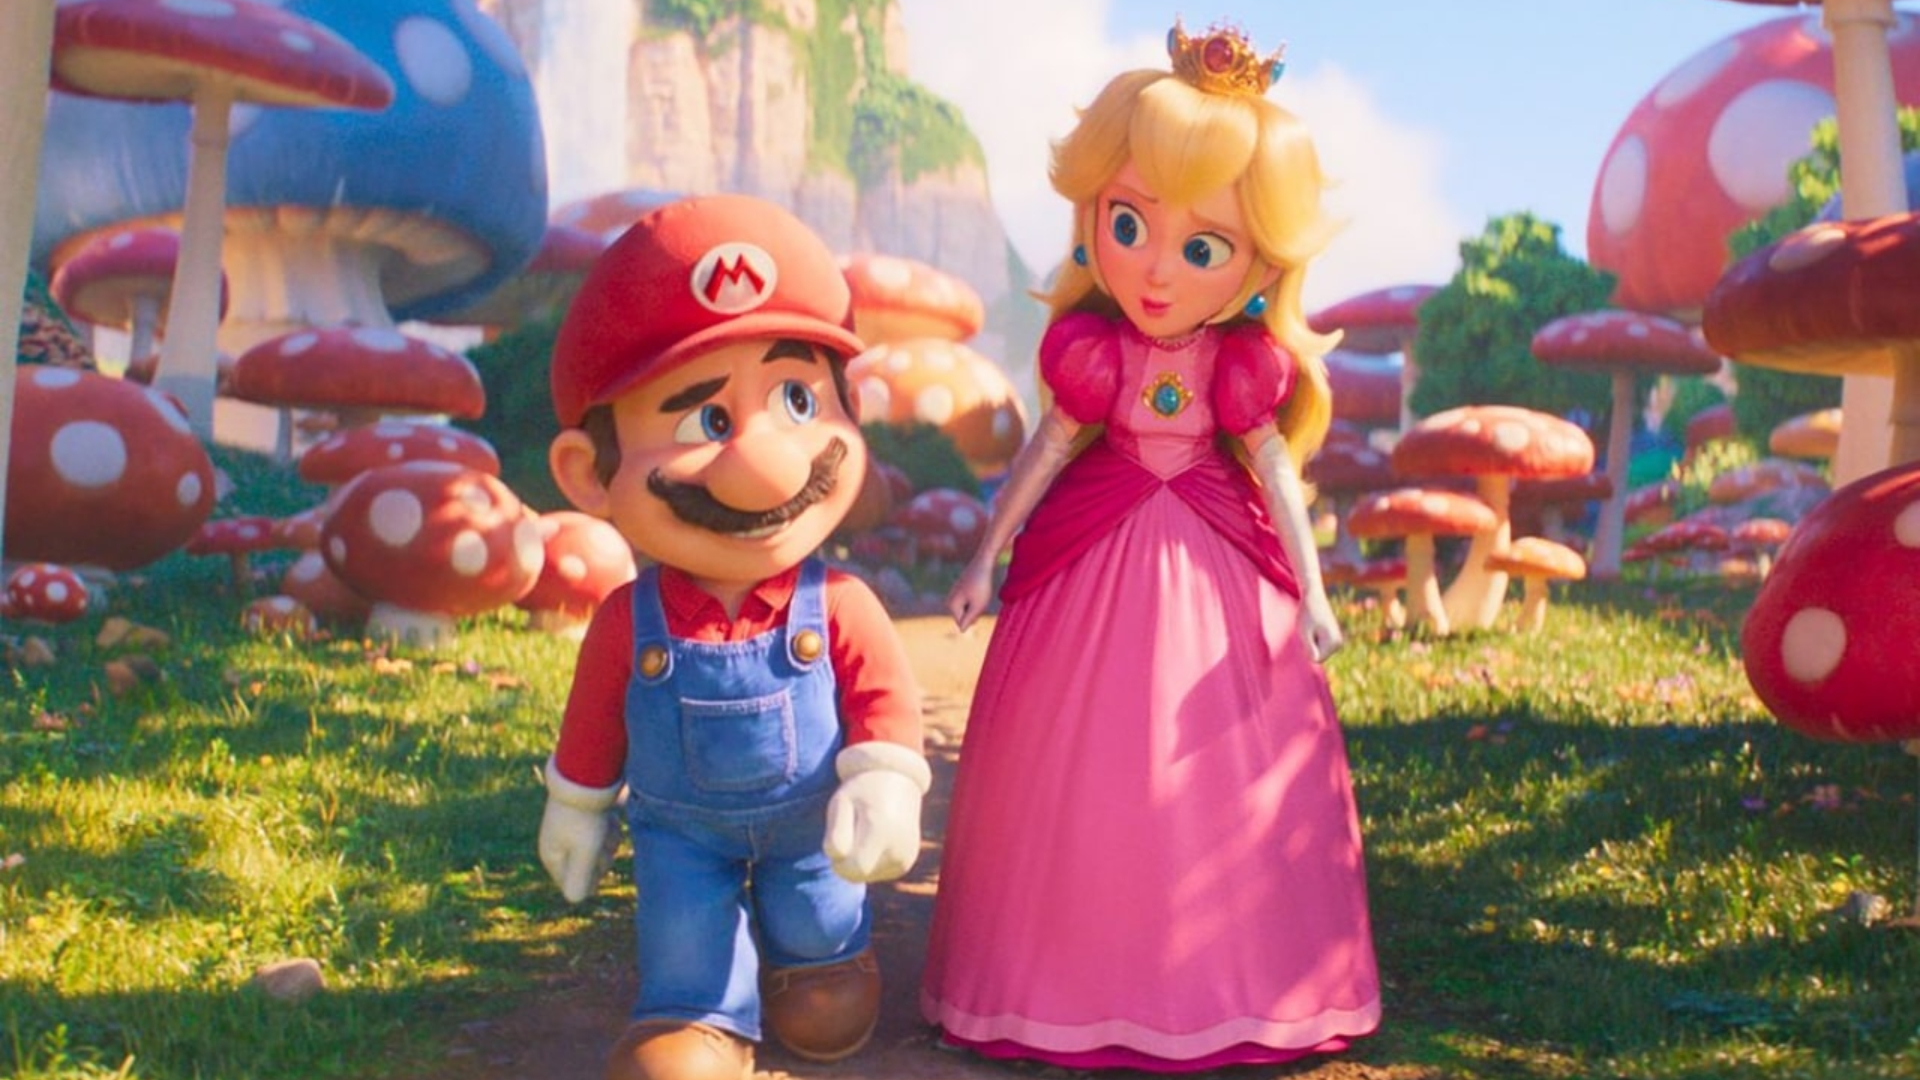 Peach y Mario caminando